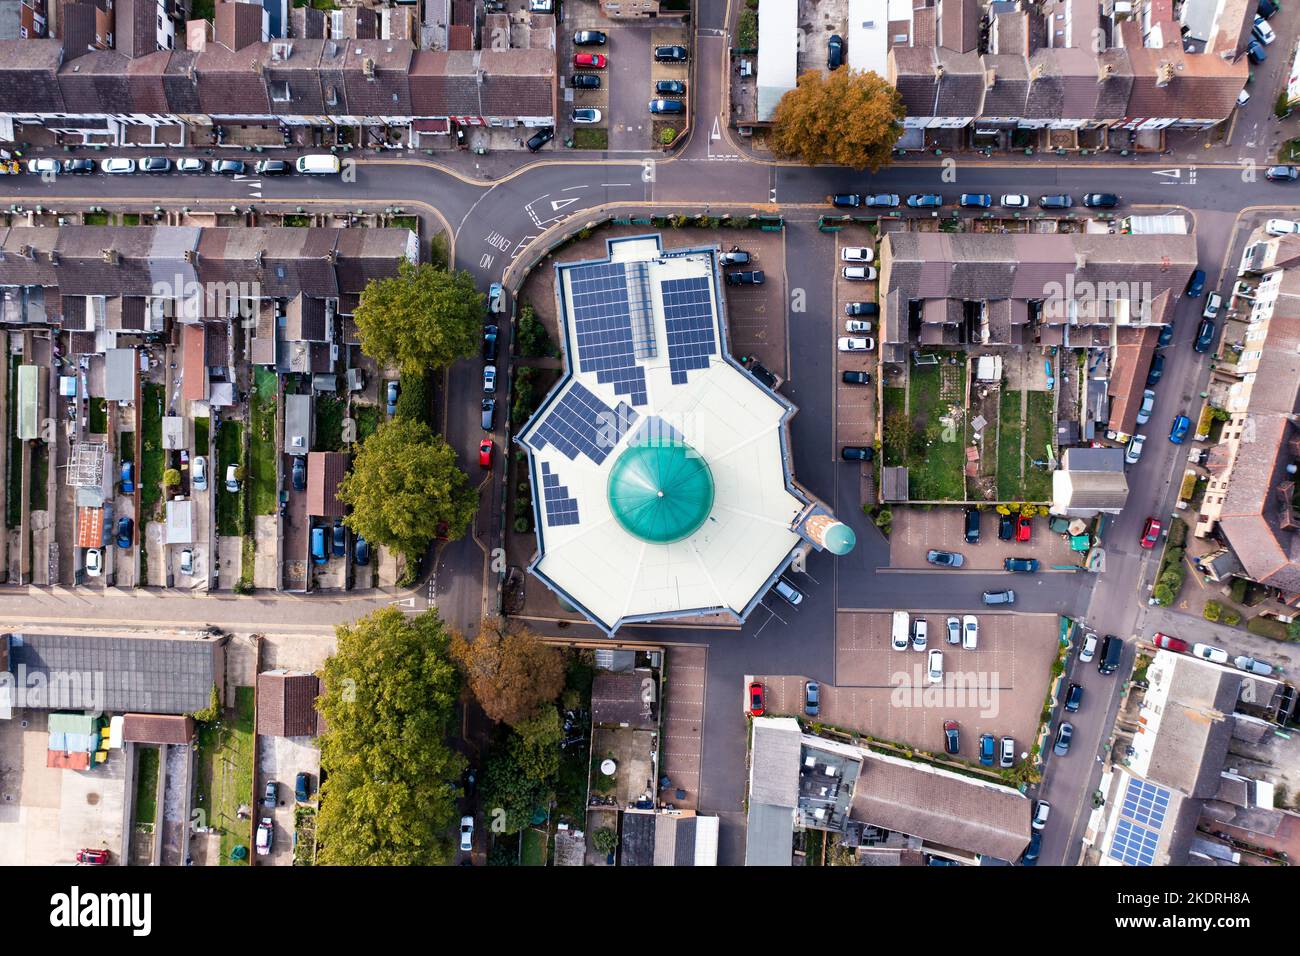 Vue aérienne d'un quartier musulman dans une ville britannique avec une mosquée au centre Banque D'Images